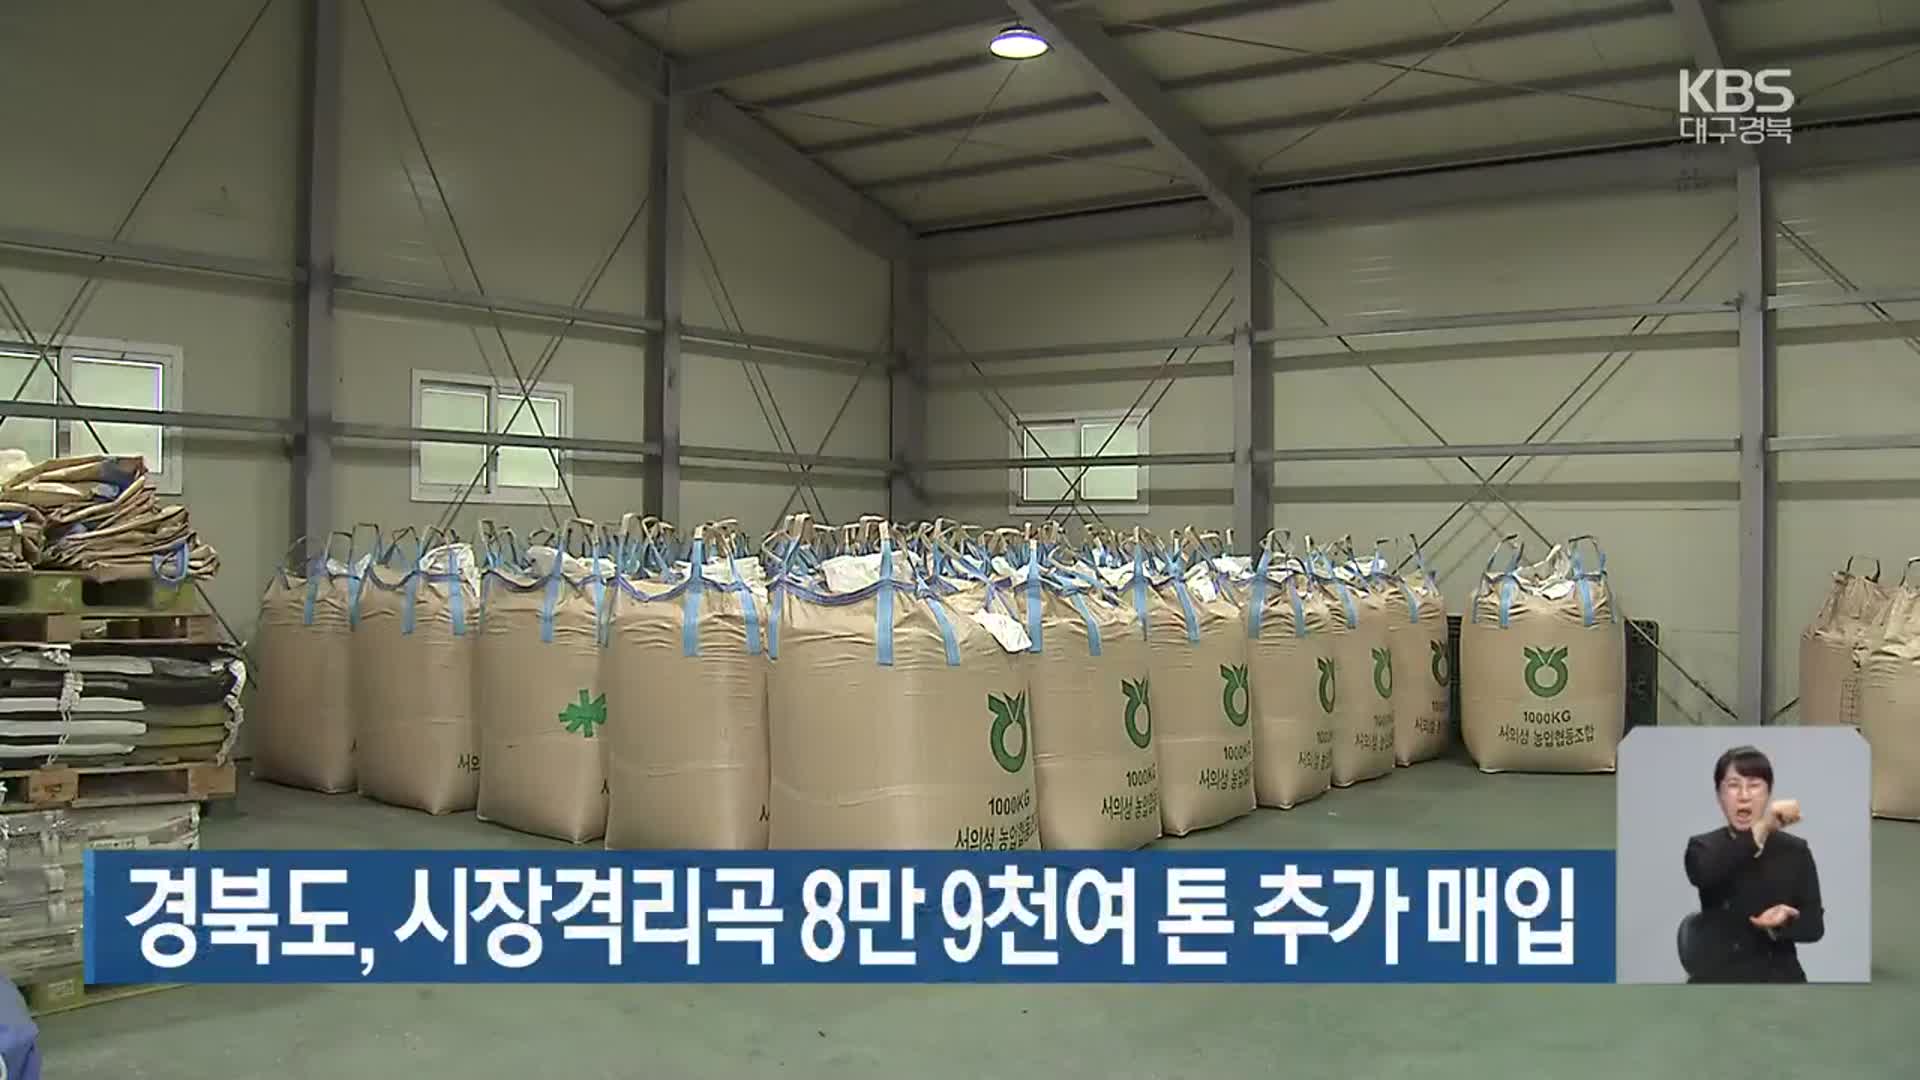 경북도, 시장격리곡 8만 9천여 톤 추가 매입